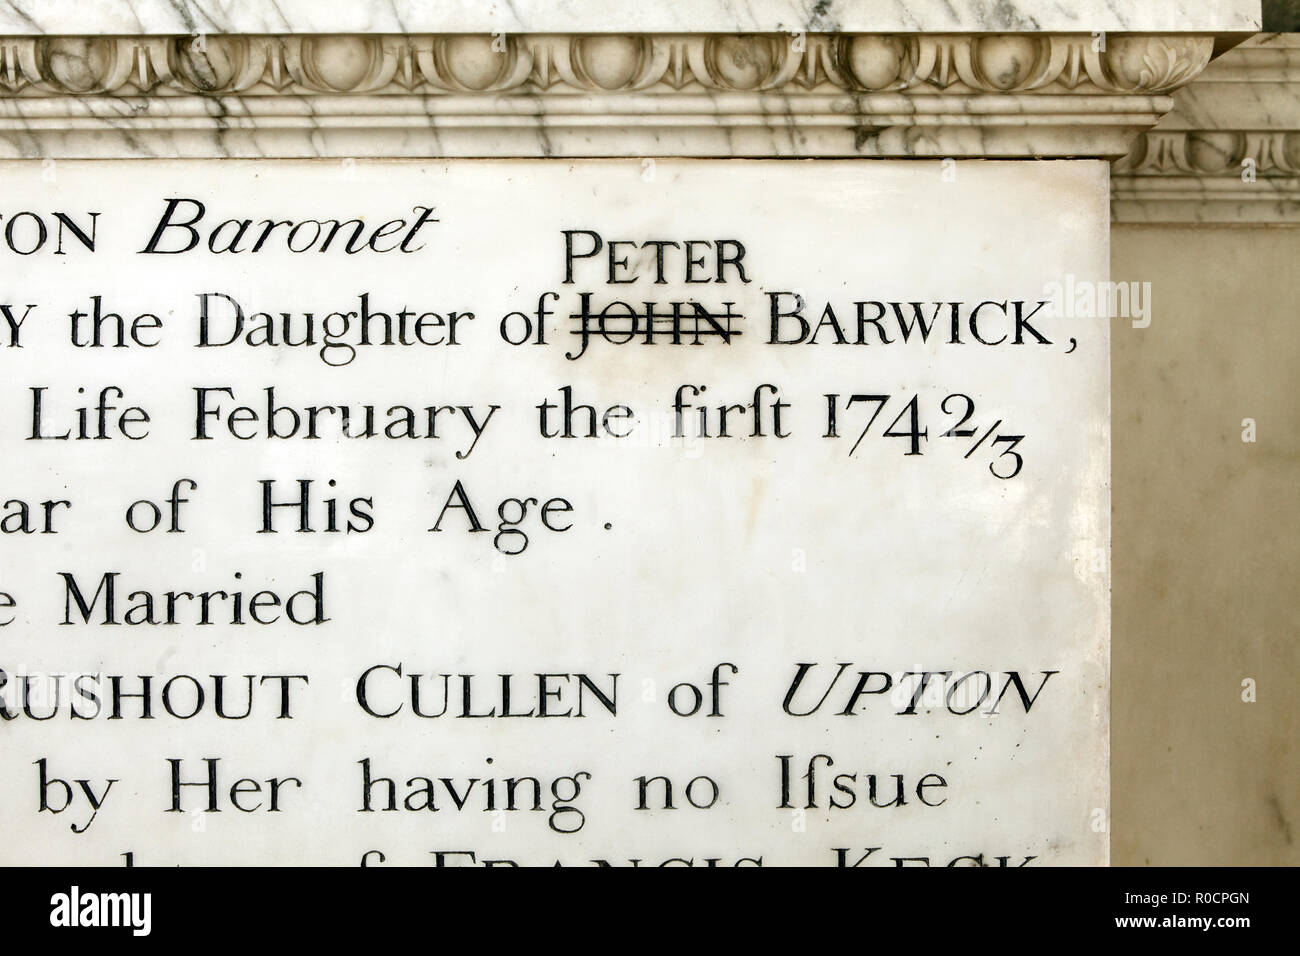 Die korrigierten Fehler auf dem Grab von Sir John Dutton, Sherborne. Baronet. Die hl. Maria Magdalena Kirche, neben Sherborne Haus. Stockfoto